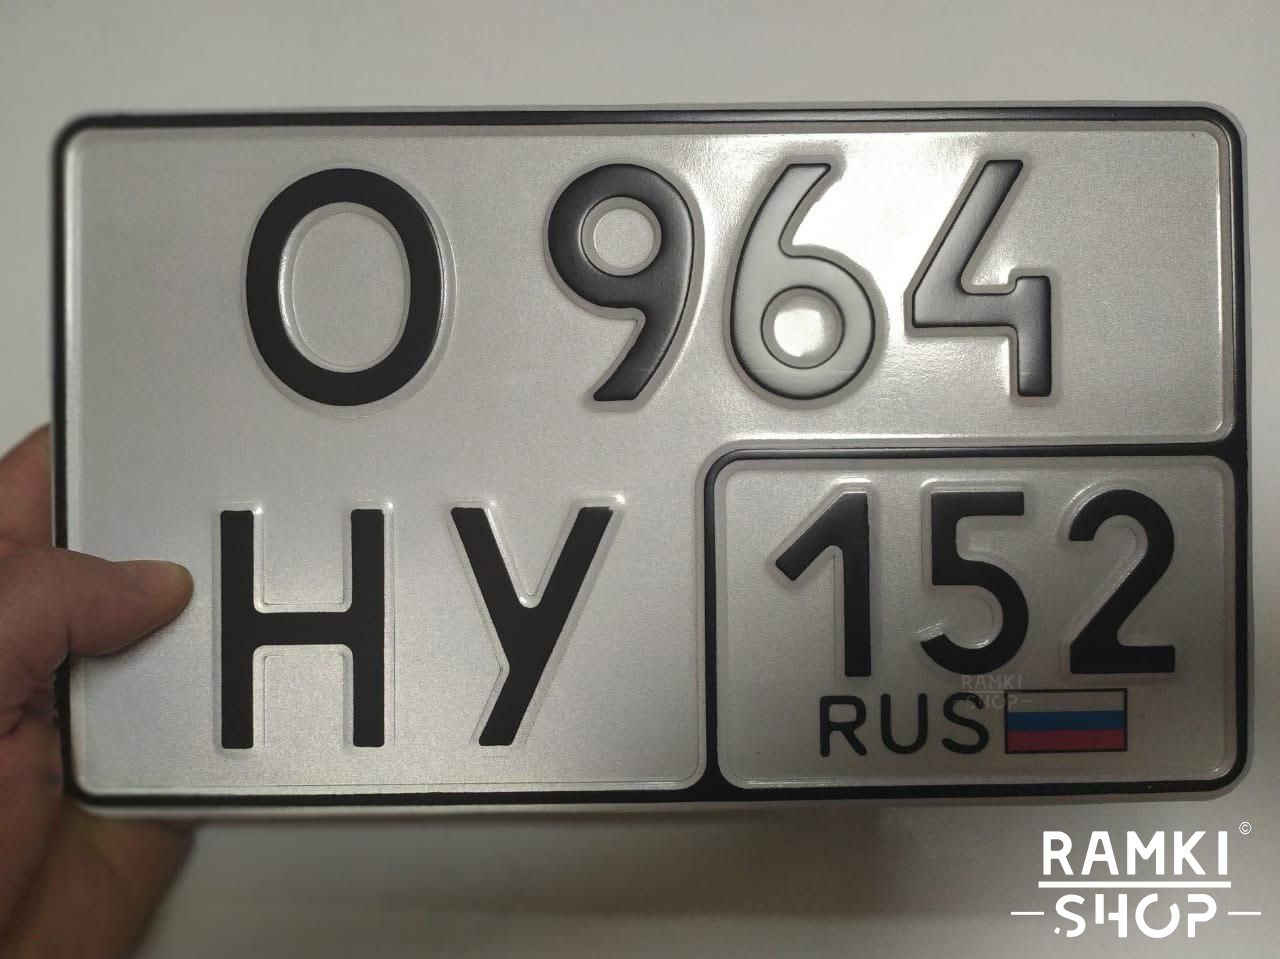 Автономера на машину. Номера автомобильные а666уф. Номерной знак Тип 1а Москва. Квадратный номерной знак. Квадратный номер на авто.